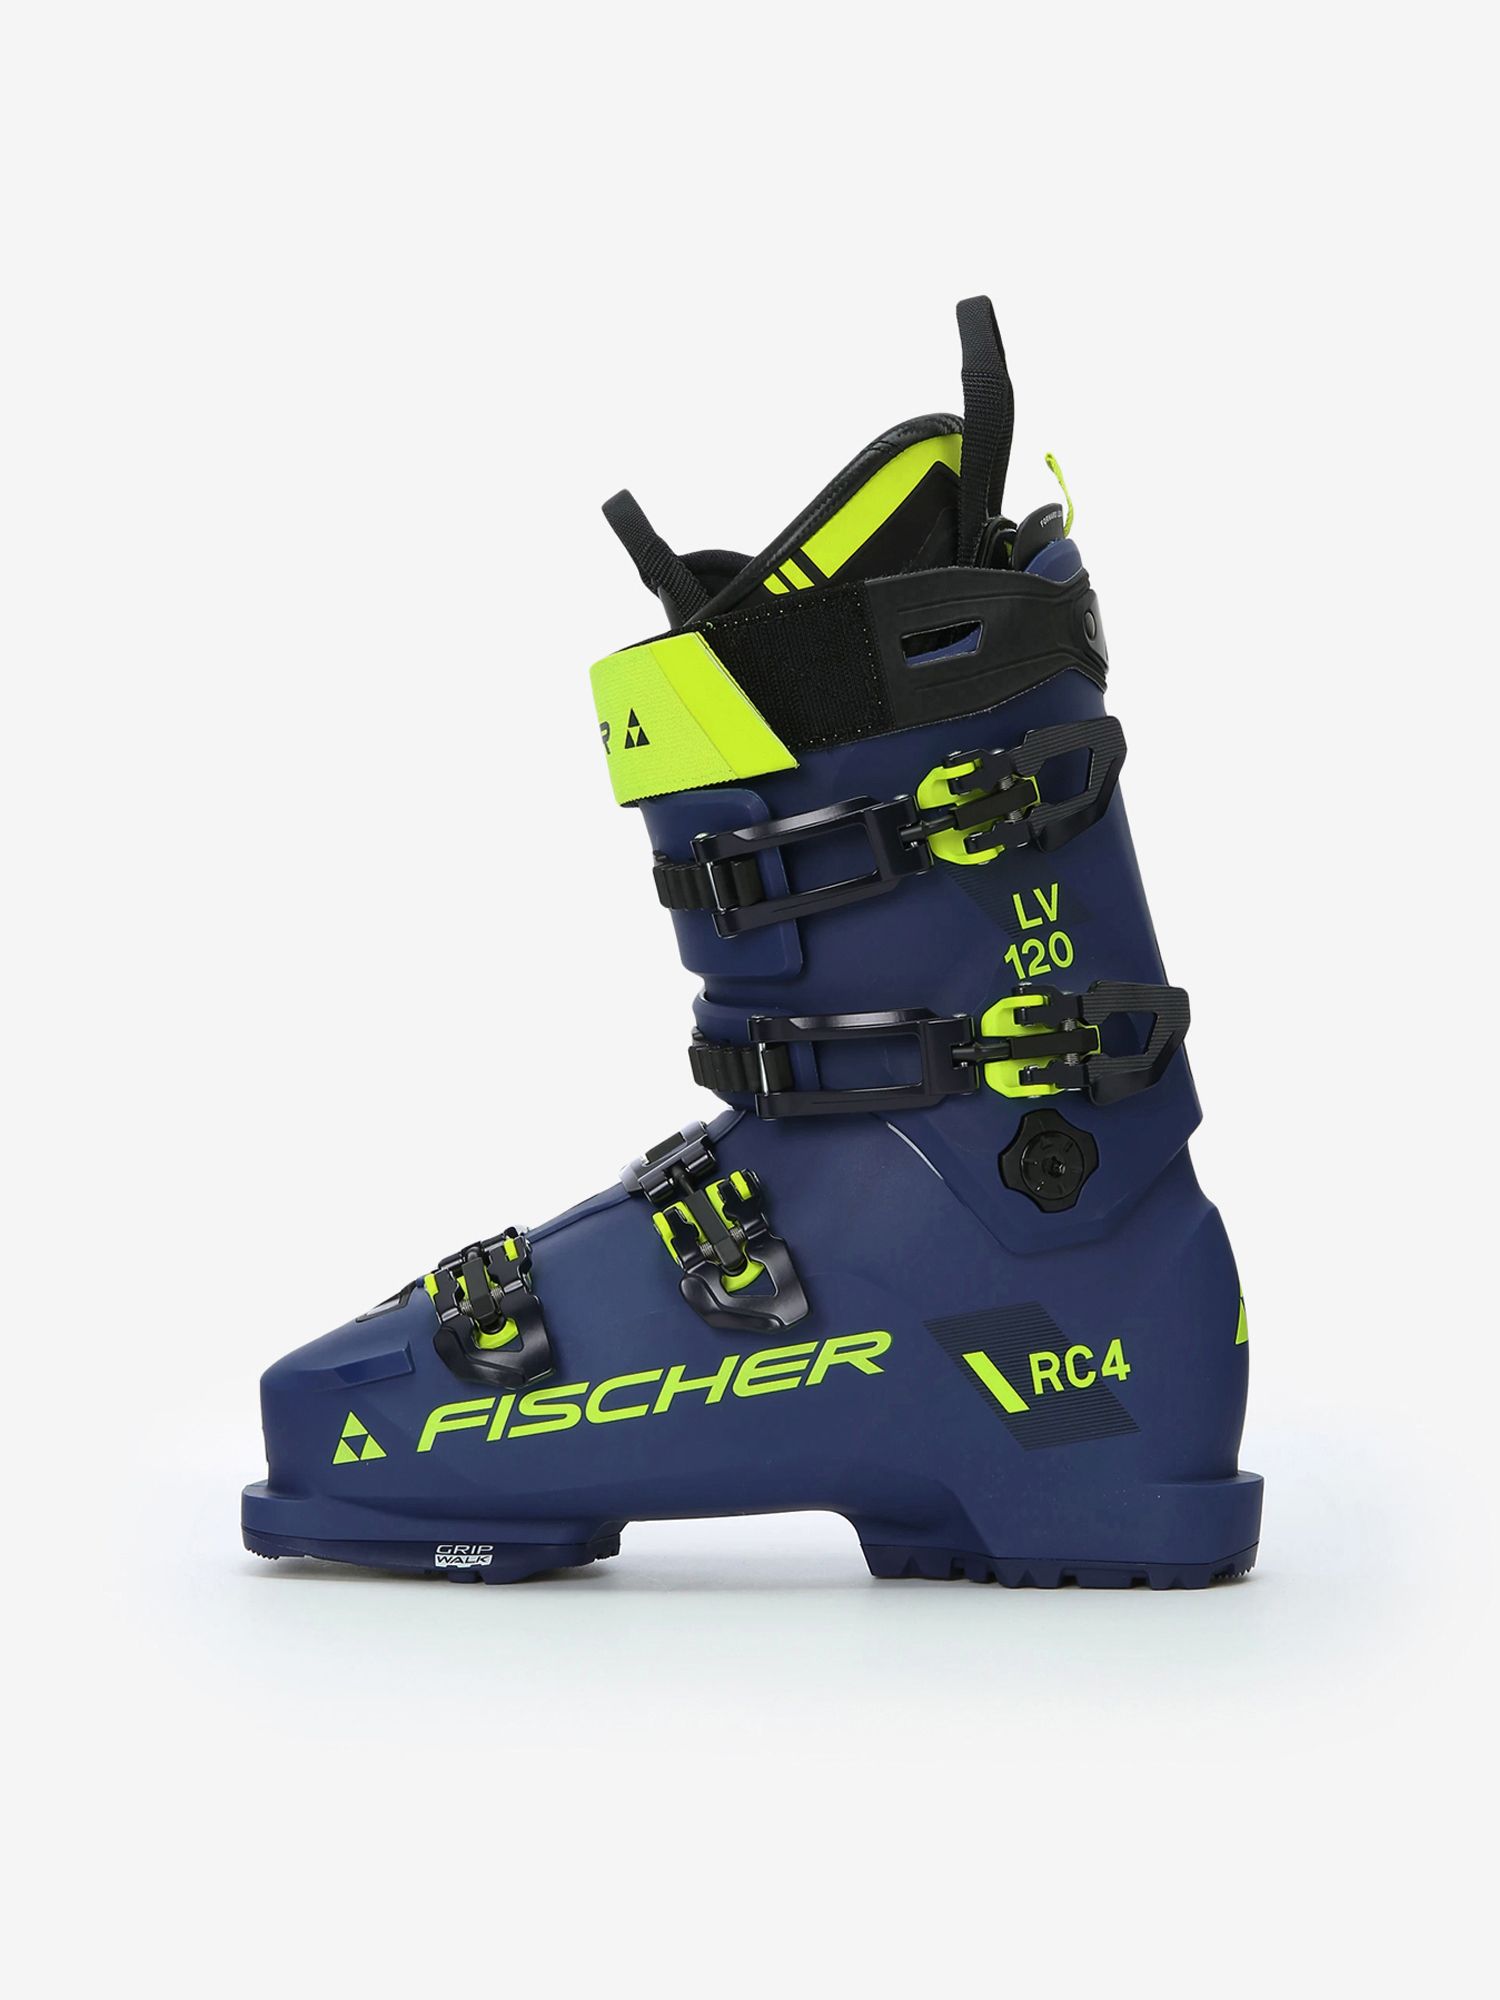 FISCHER(フィッシャー) VACUUM RC4 100 24.5㎝ - ブーツ(男性用)